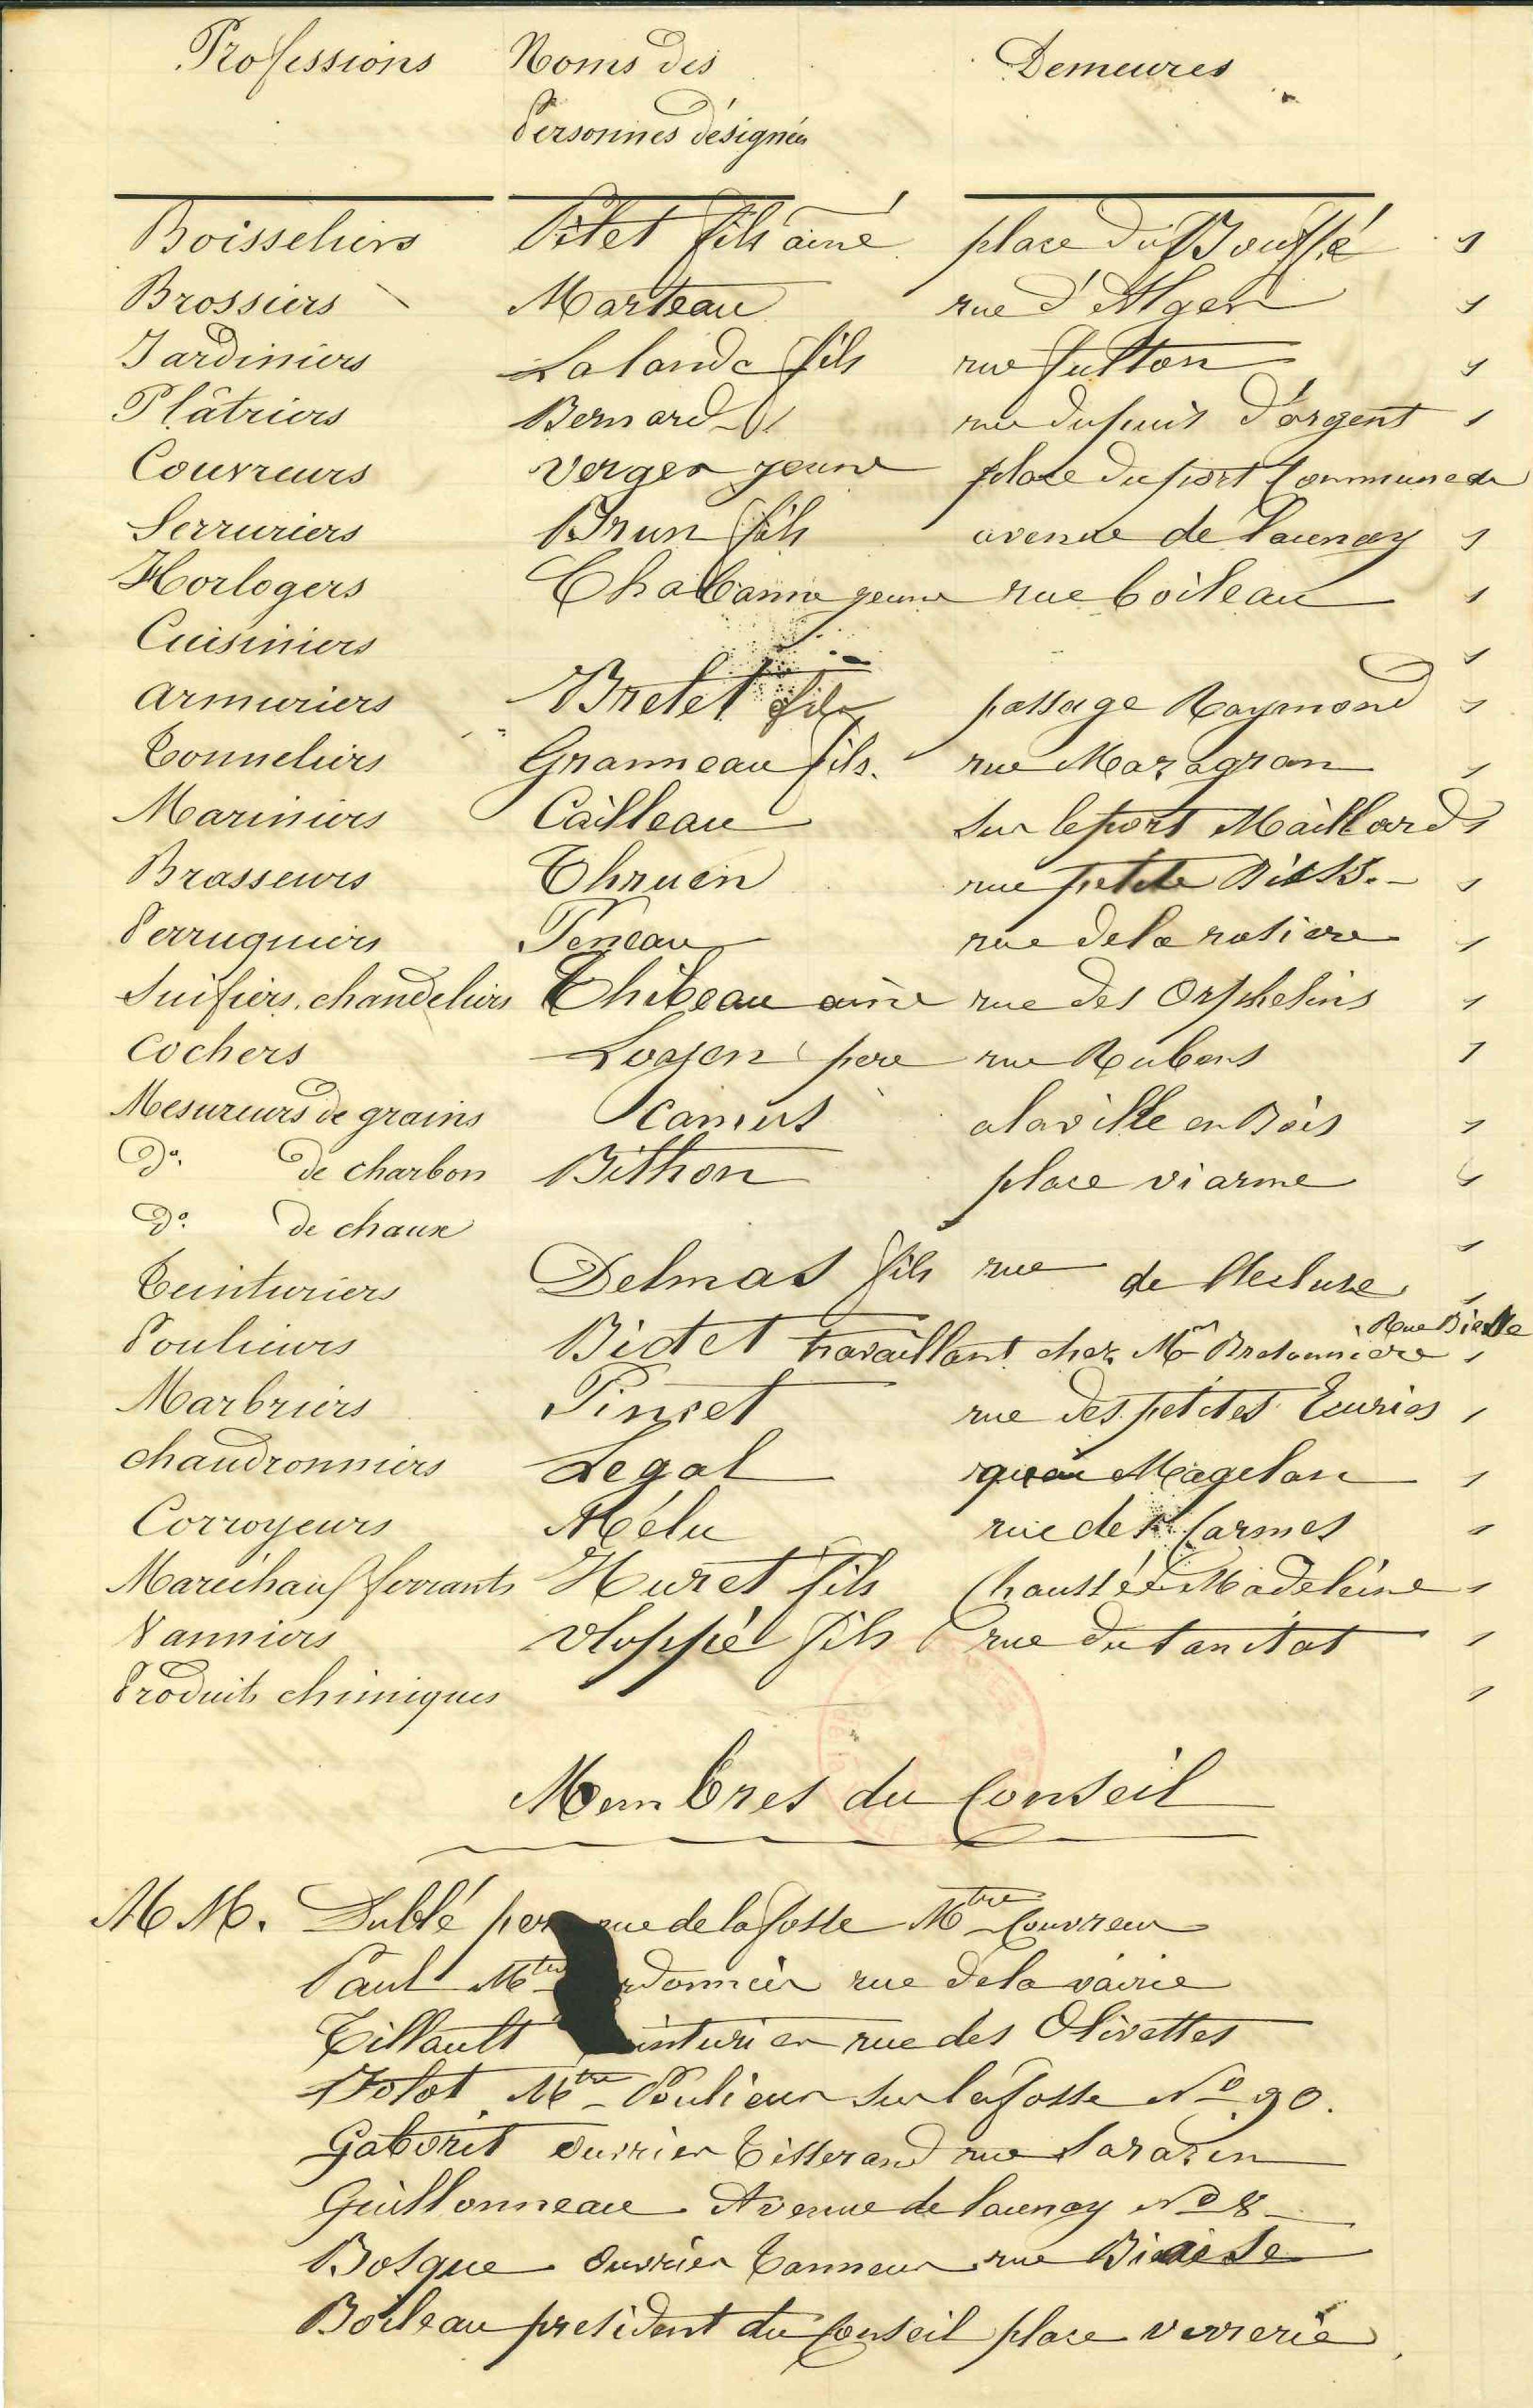 Listes des représentants des corps ouvriers invités au banquet, verso (1I211)